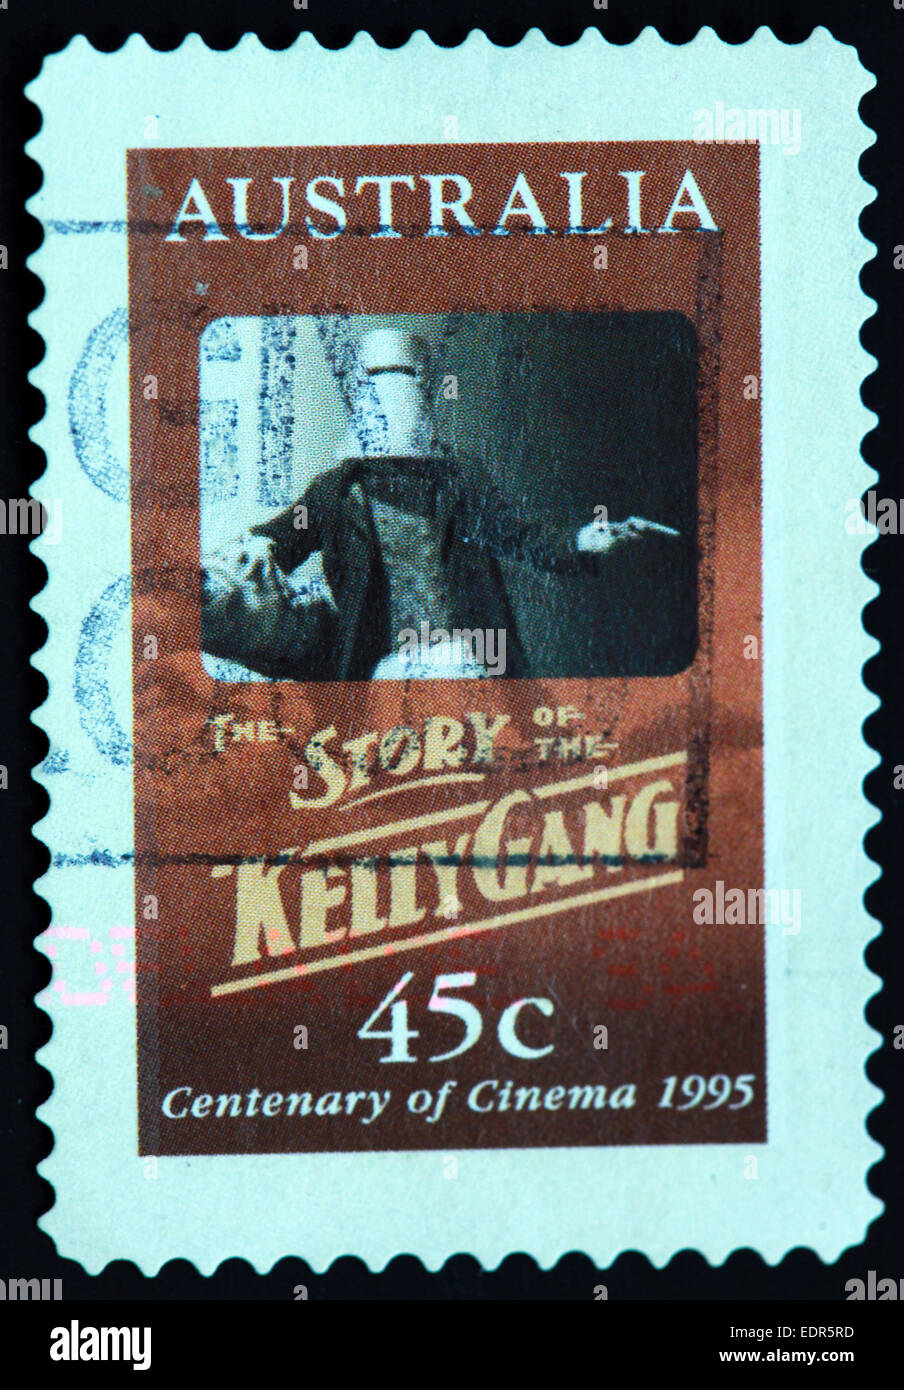 Verwendet und Poststempel Australien / Austrailian Stempel 45c Geschichte der Kelly-Bande-1995 Hundertjahrfeier des Kinos Stockfoto